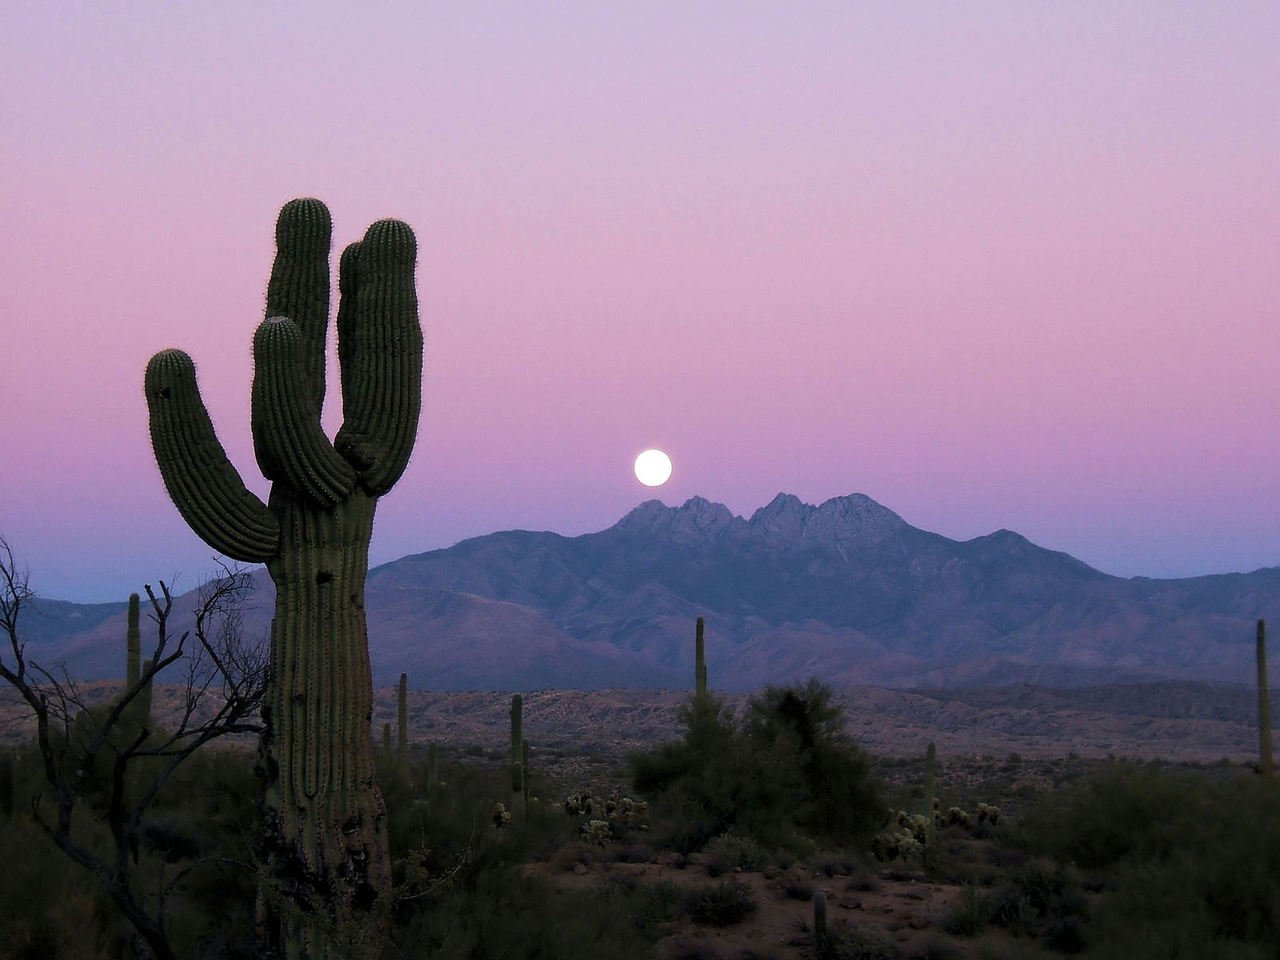 The Full Moon rises in the desert